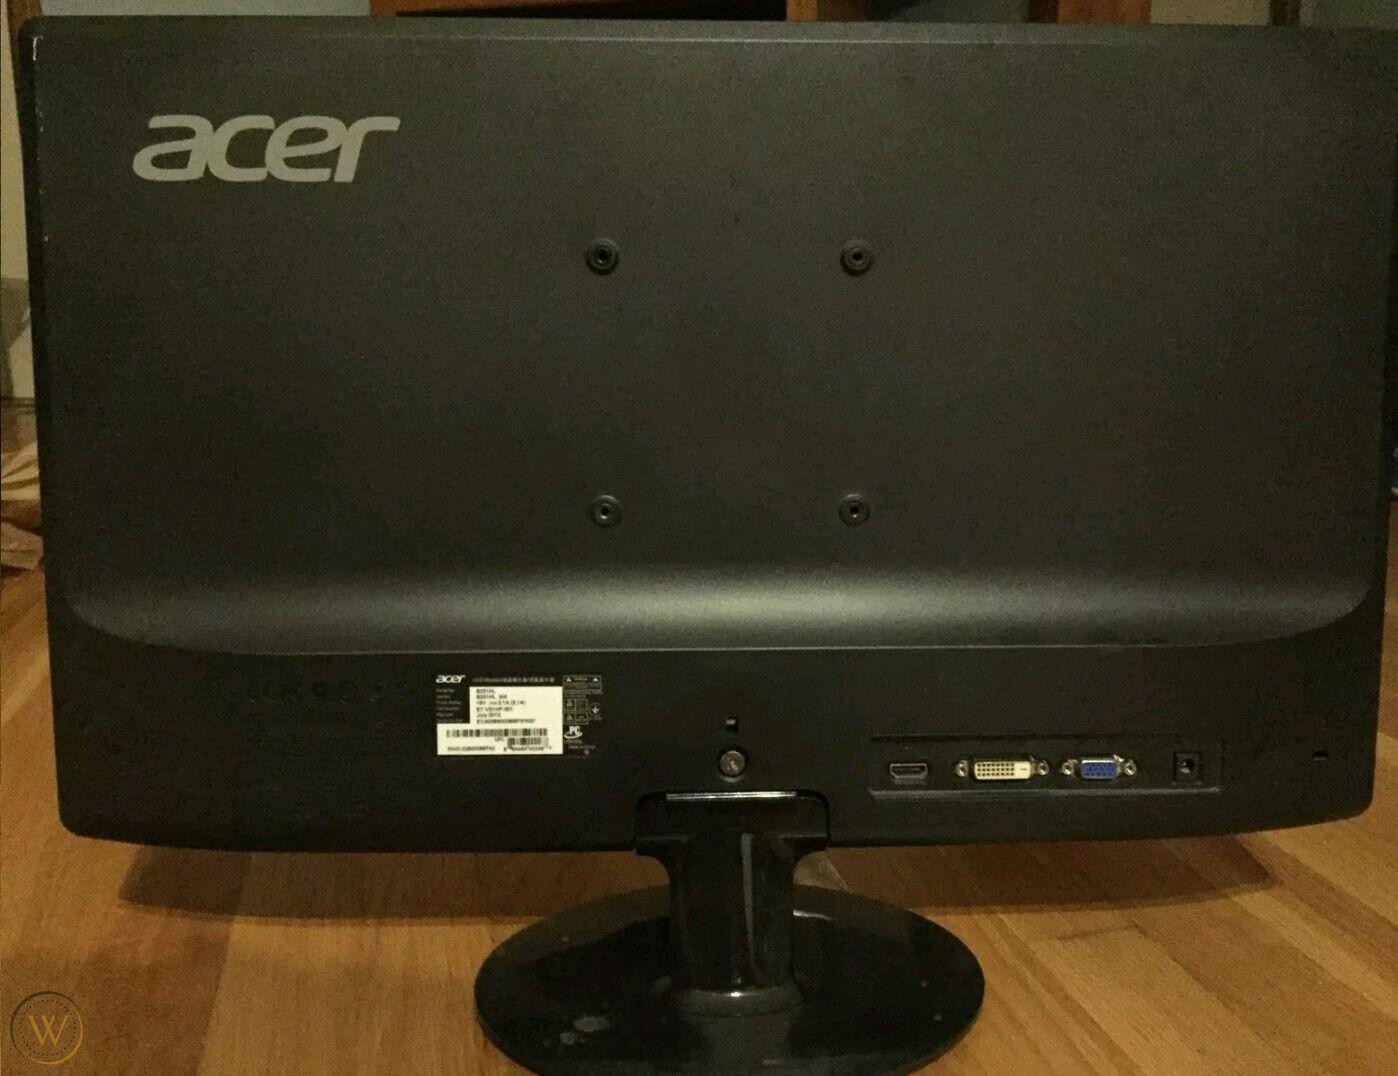   Acer S231HL 23